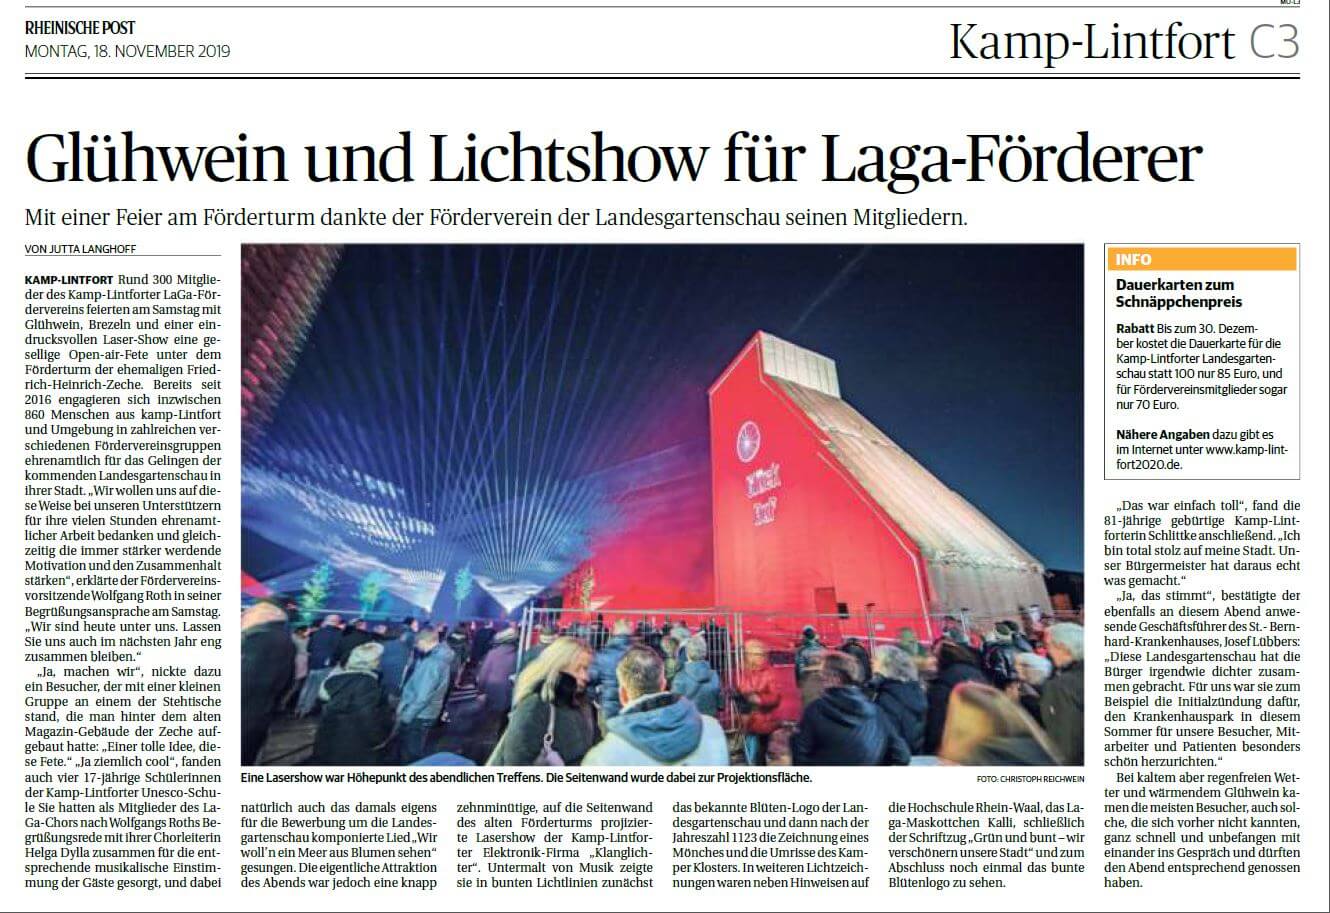 Zeitungsartikel der Rheinischen Post mit Lasershow und Licht-Illumination